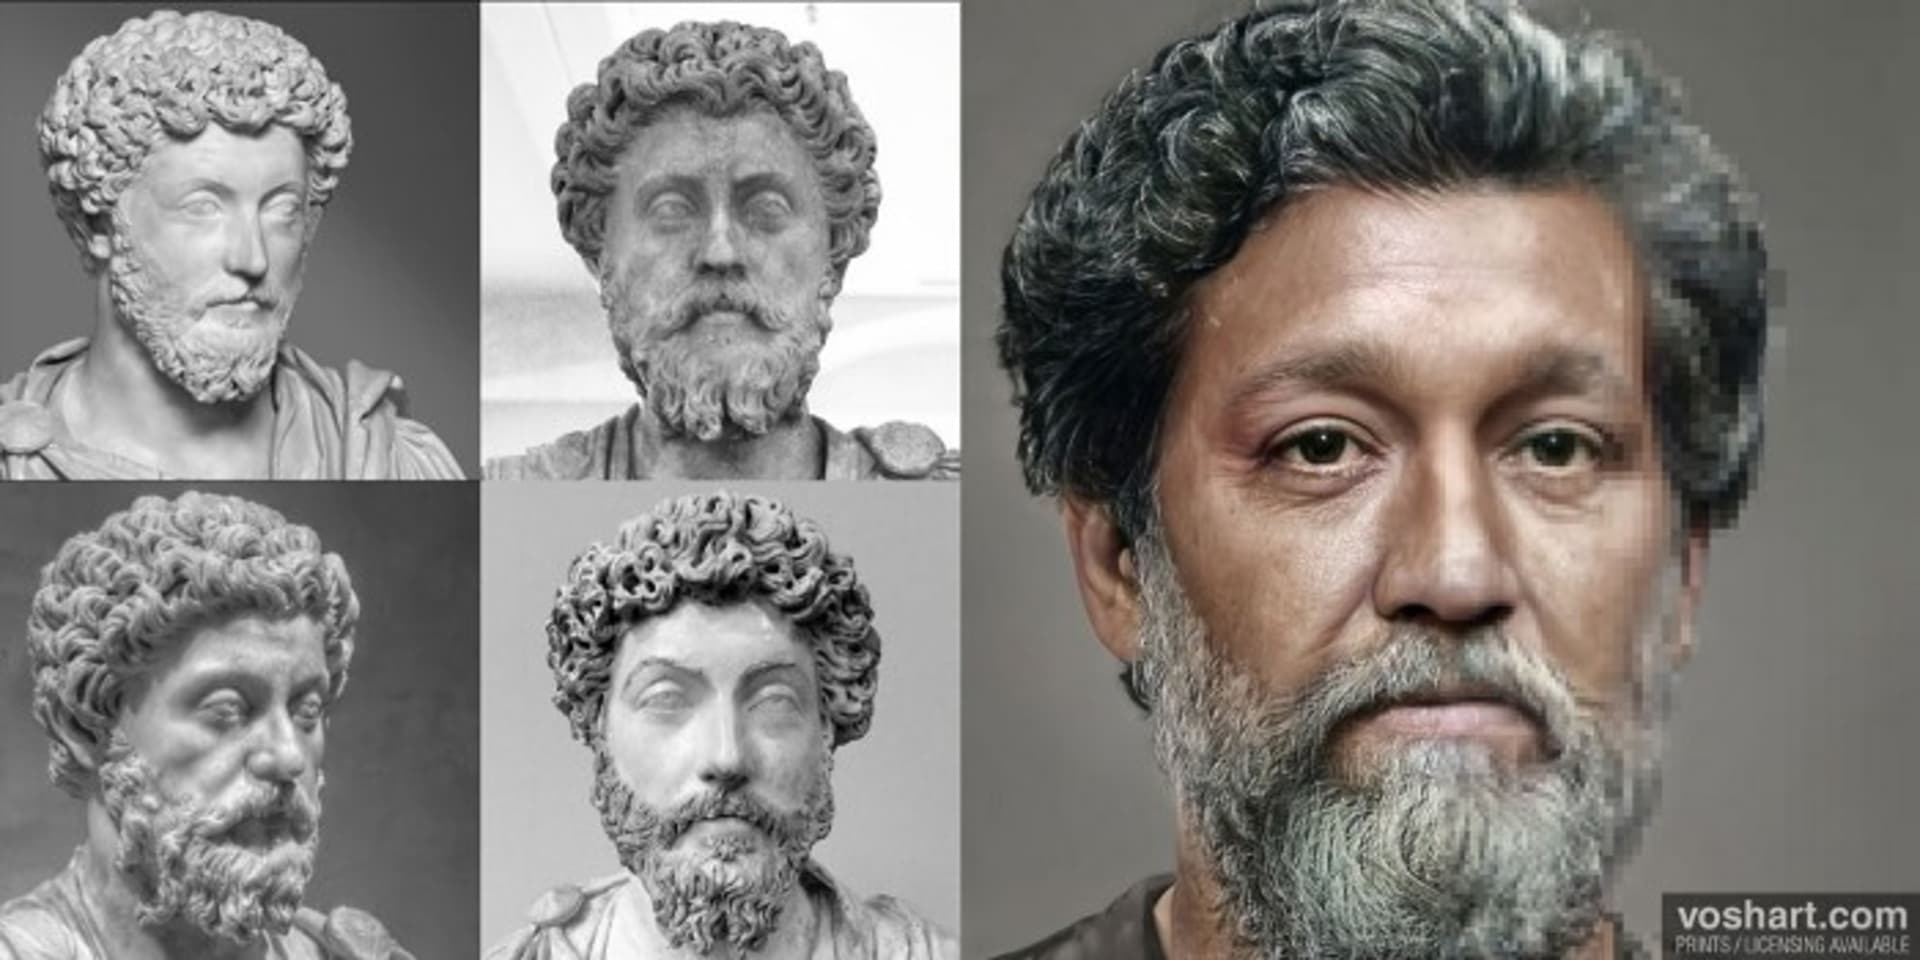 Velmi známým je také Marcus Aurelius, který býval coby představitel filozofie stoicismu nazýván „filosof na trůně“. Vládl od roku 161 až do 180 n. l.